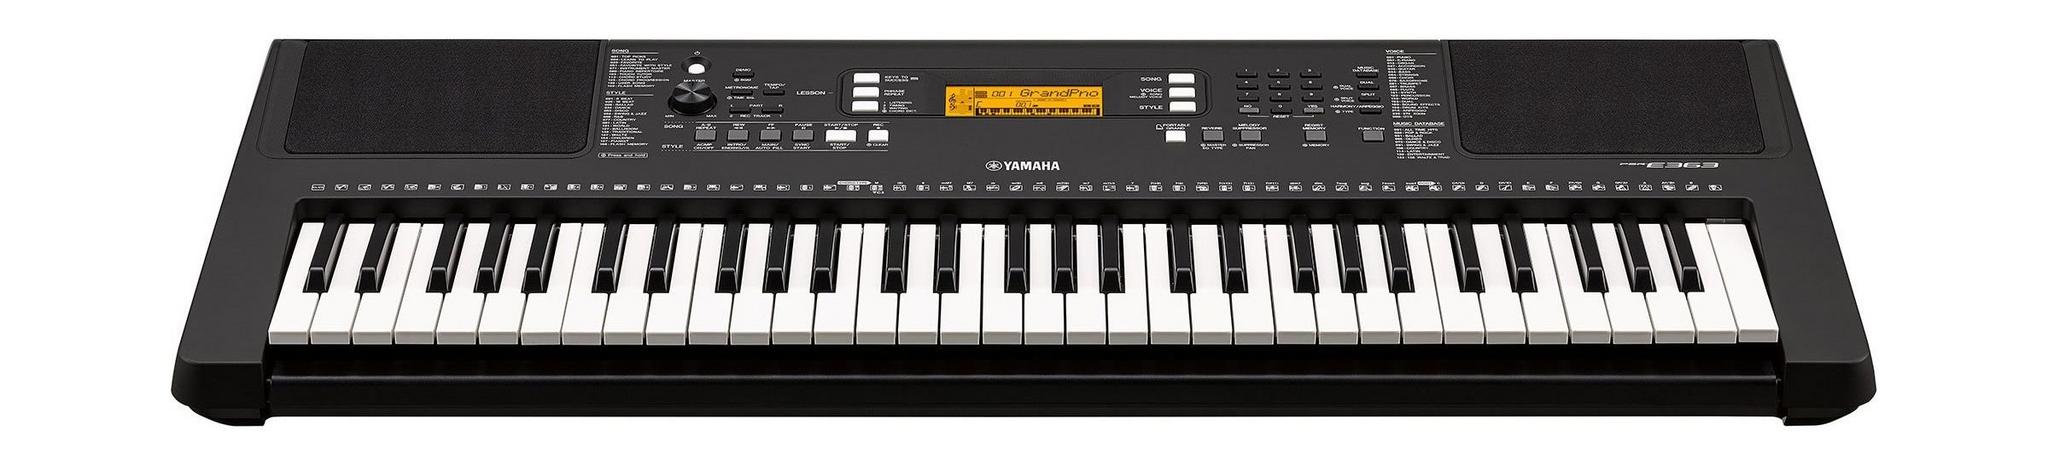 Yamaha Musical Keyboard 61 Keys (PSR-E363)